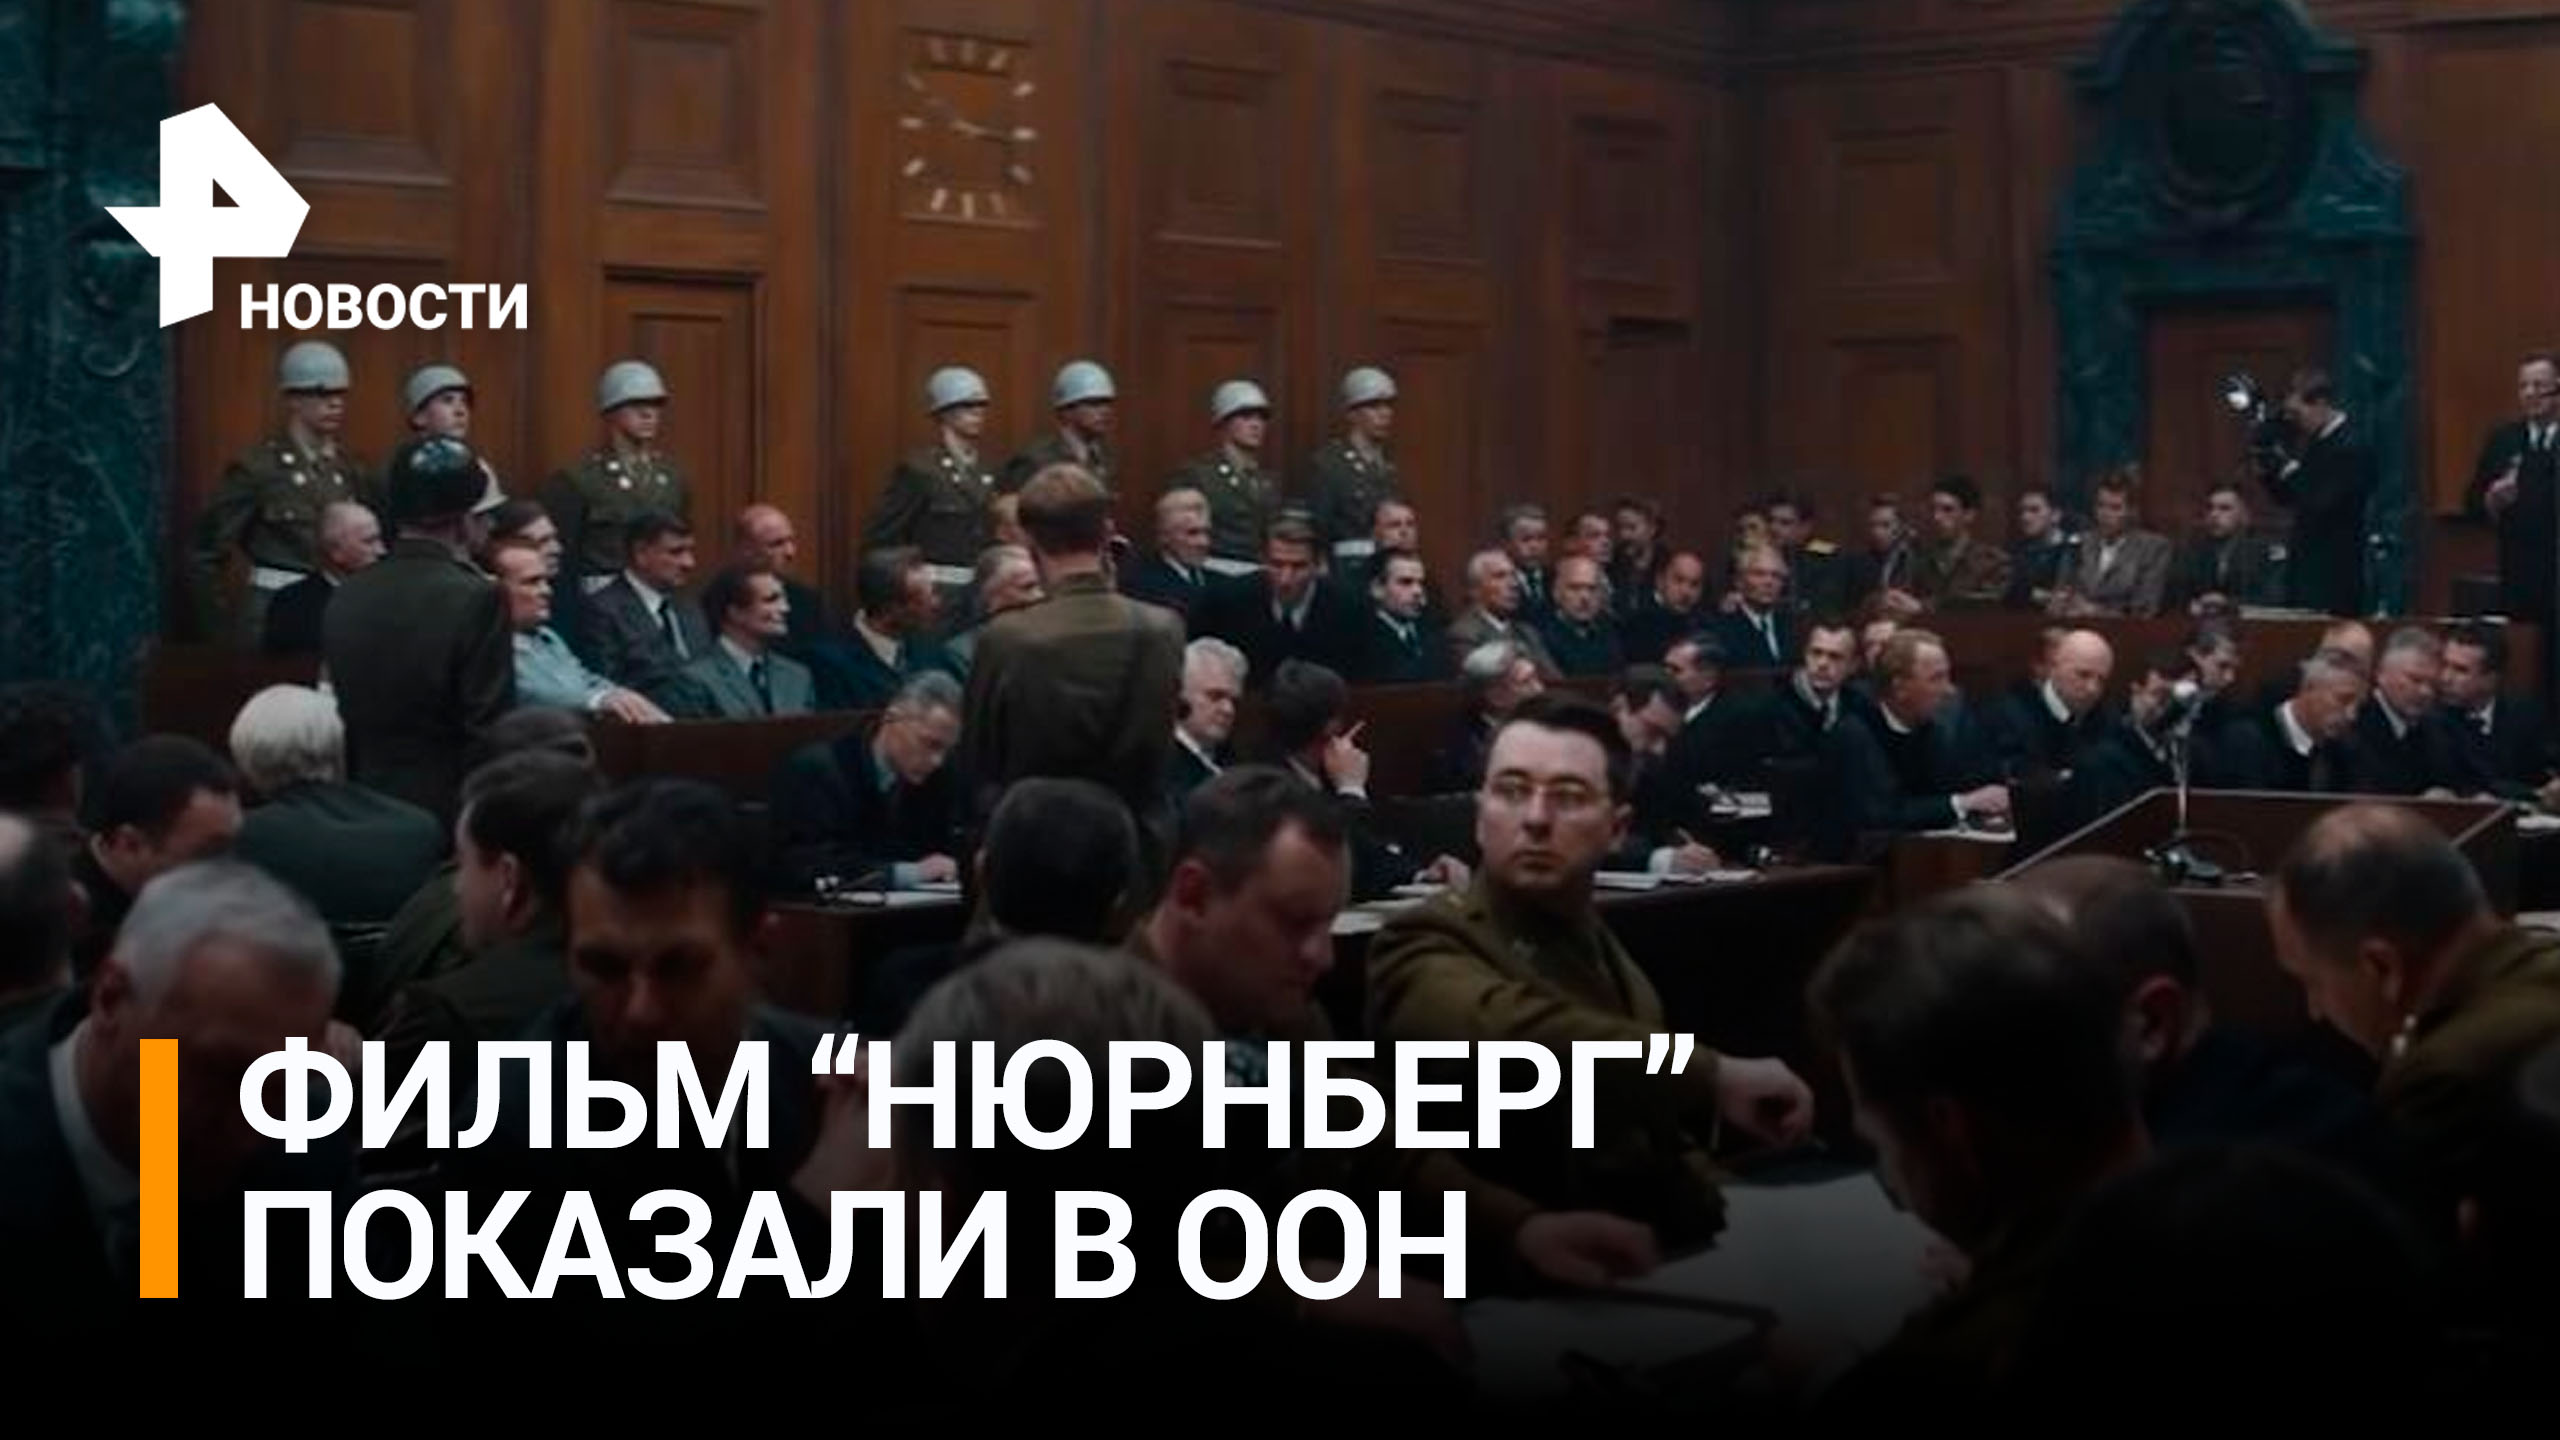 Российские дипломаты показали фильм Нюрнберг в залах ООН